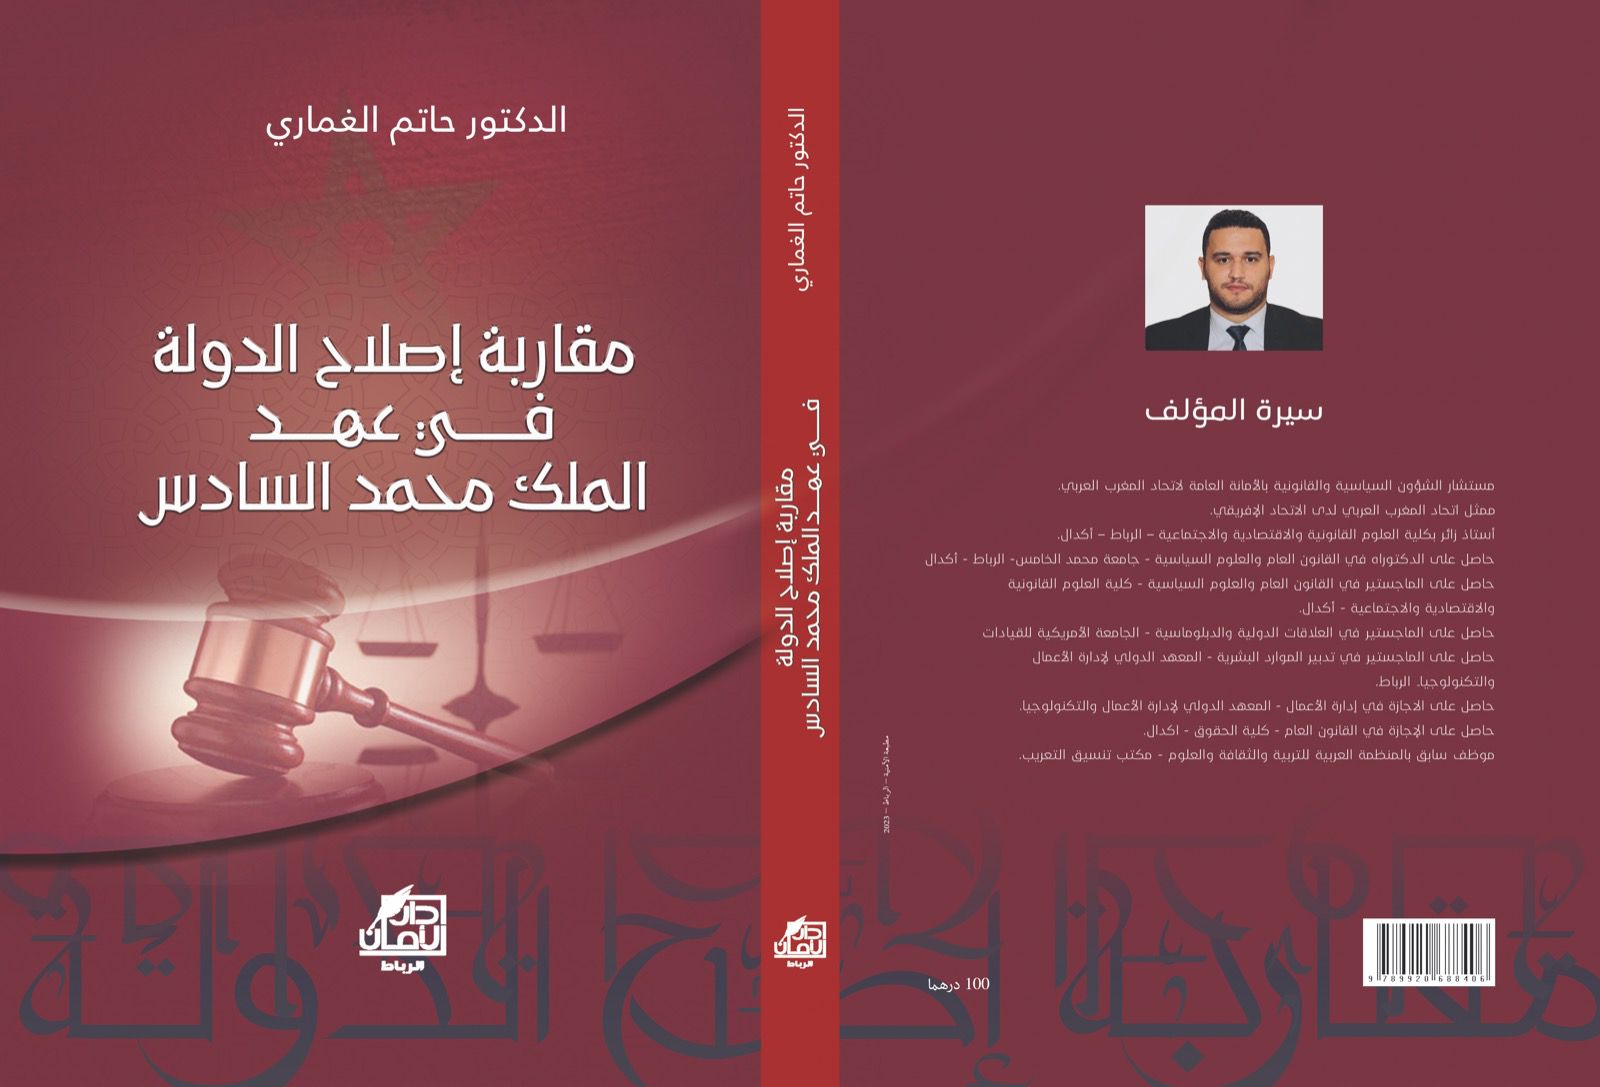 إصدار جديد للغماري حول إصلاح الدولة في عهد الملك محمد السادس